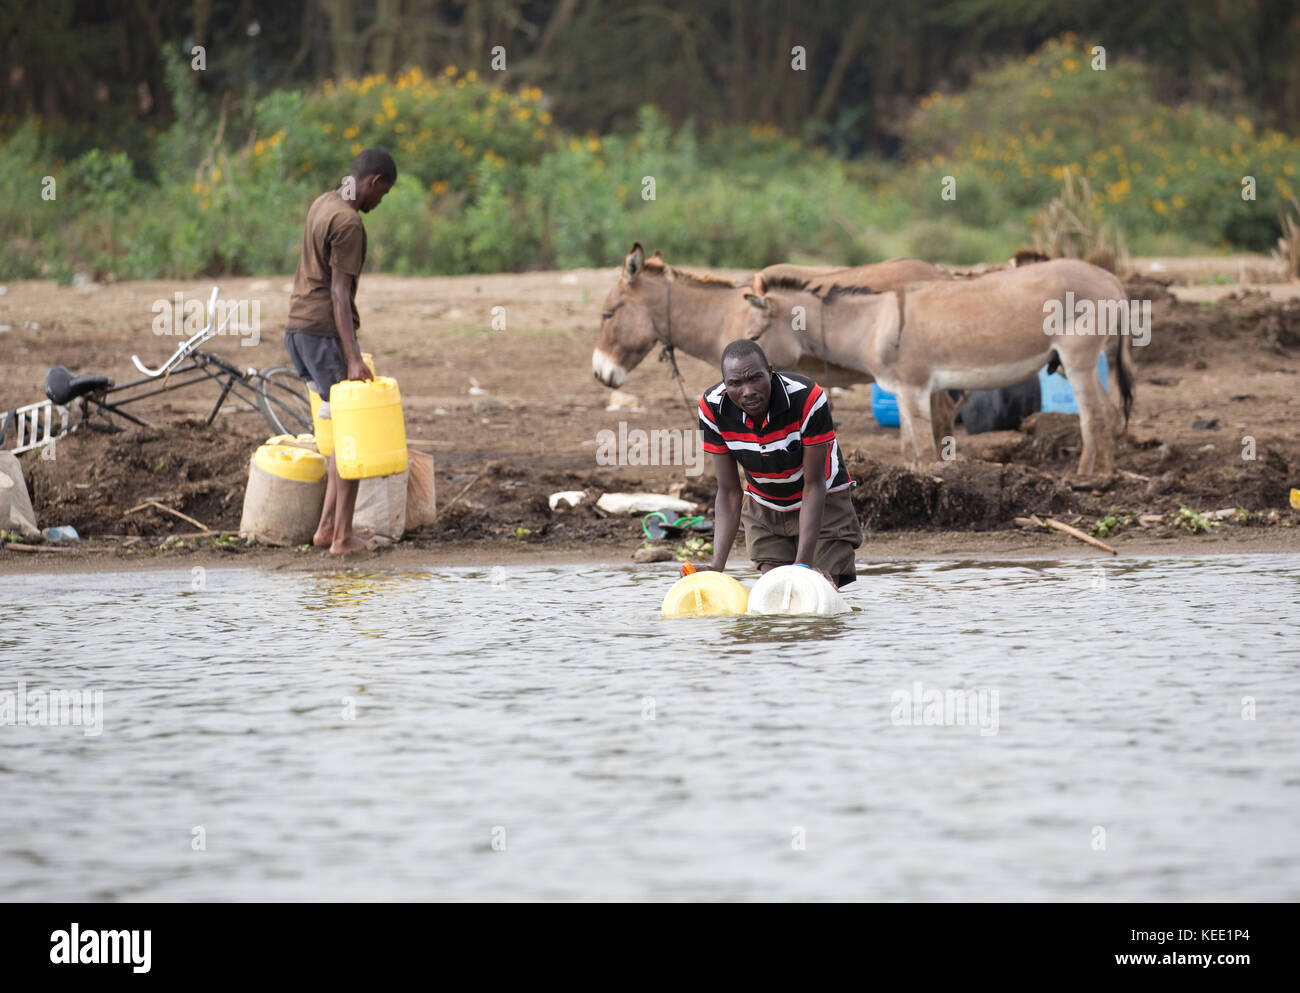 African men and donkeys collecting water Lake Naivasha Kenya Stock Photo